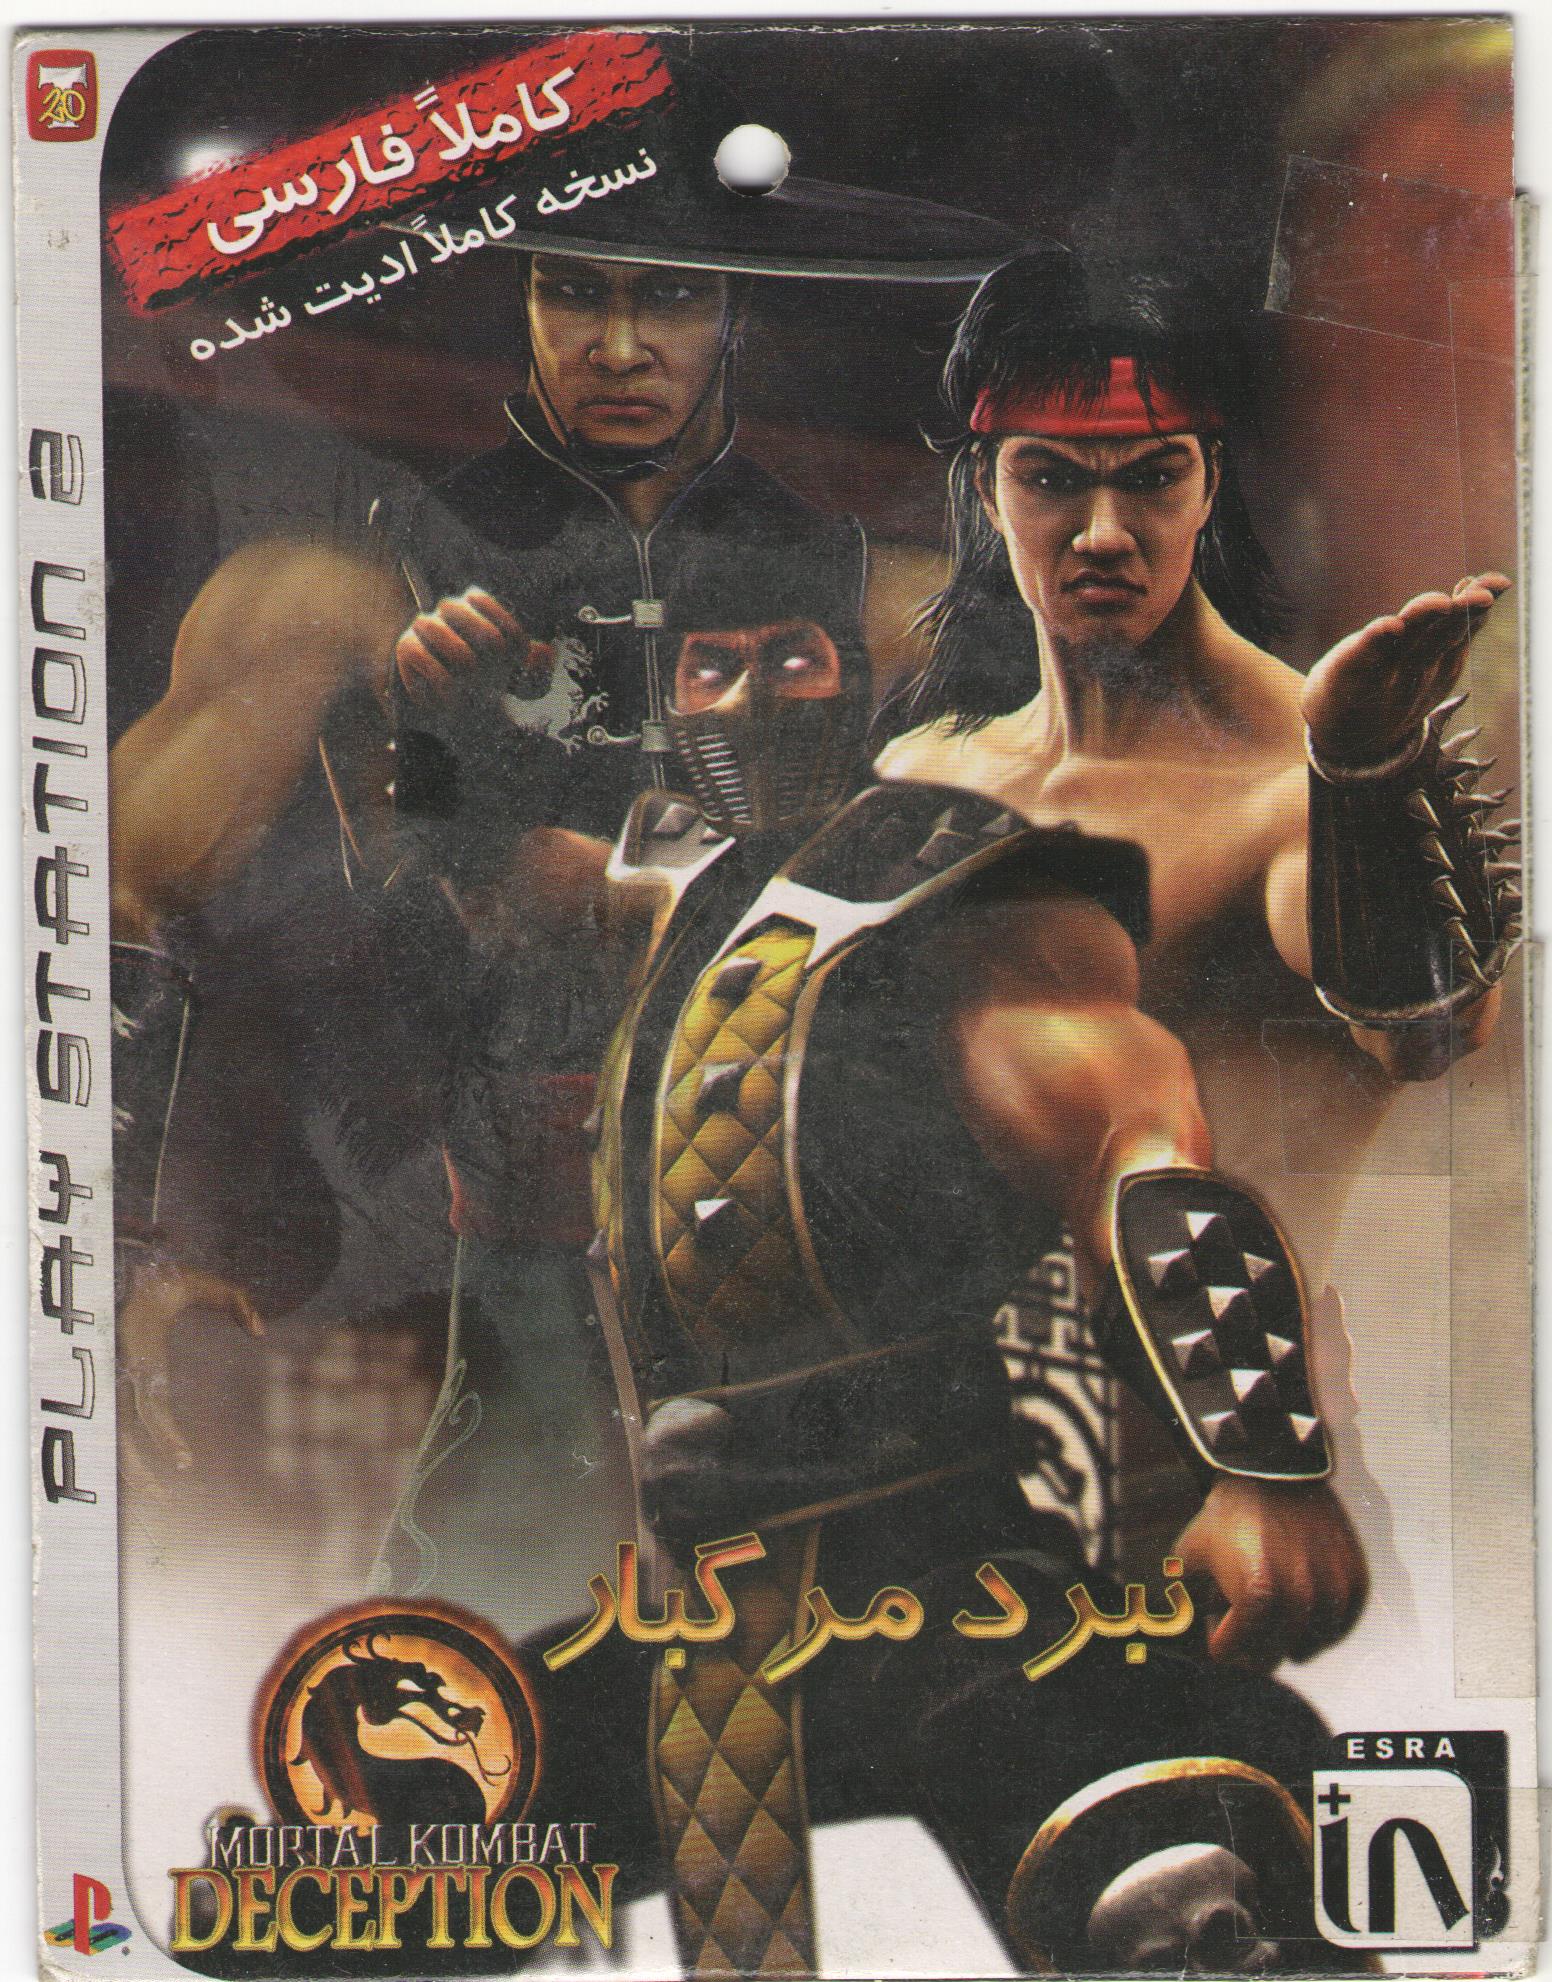 http://s13.picofile.com/file/8397933000/Mortal_Kombat_Deception_Farsi_Cover_PS2_1_.jpg